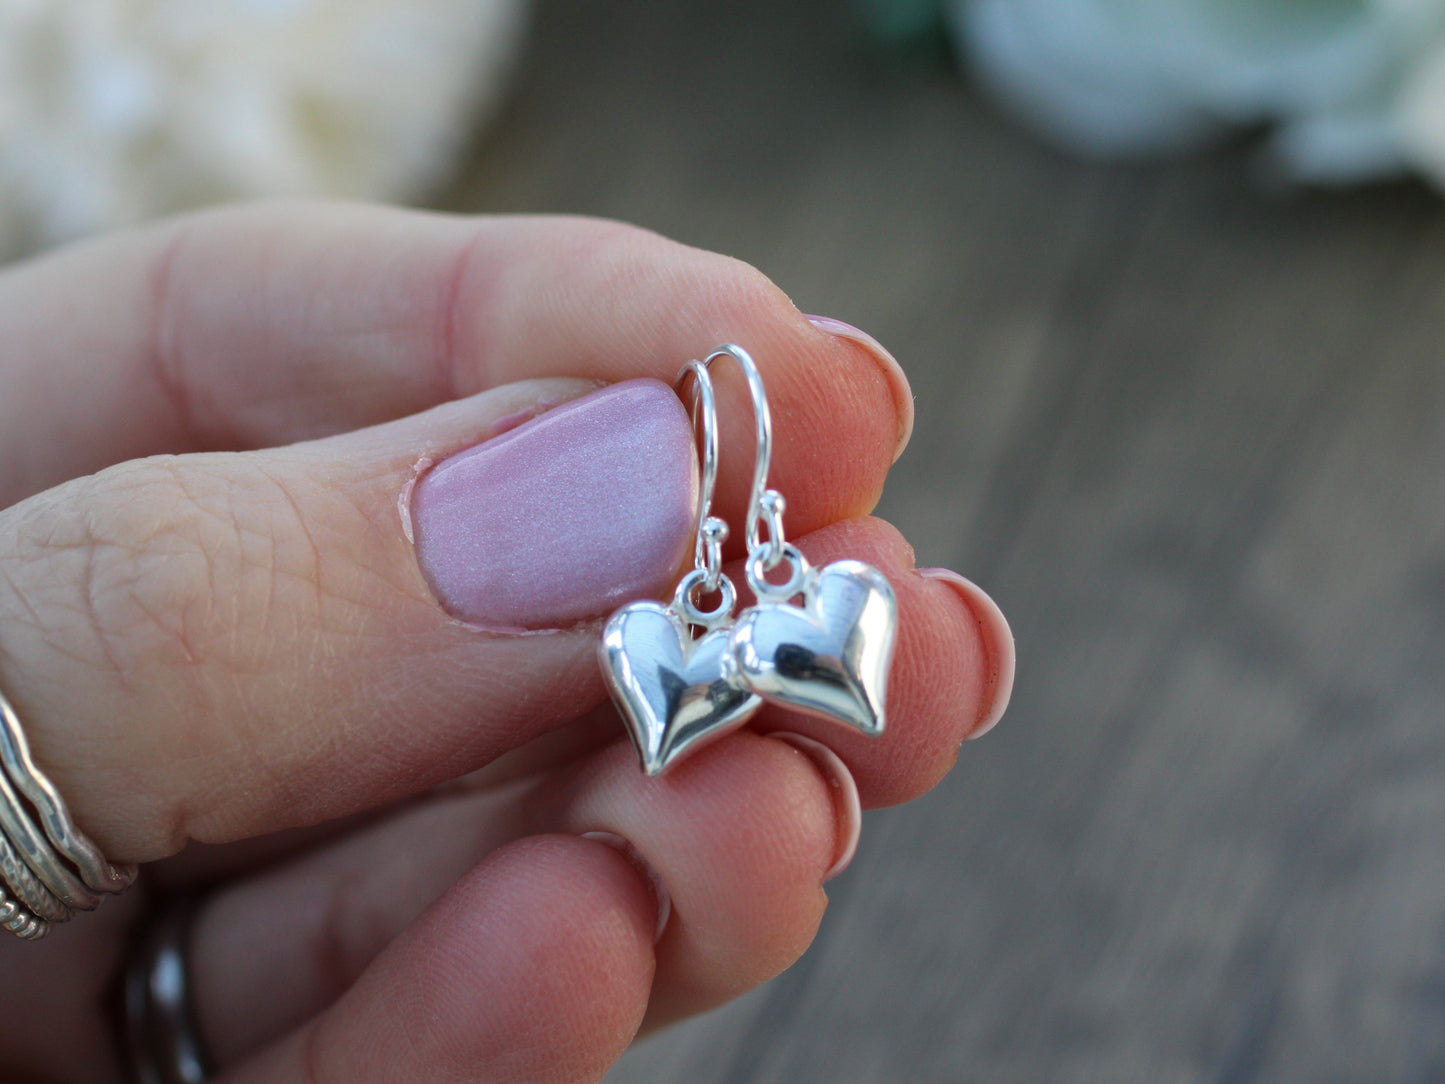 Mothers day earrings. Heart earrings in sterling silver.